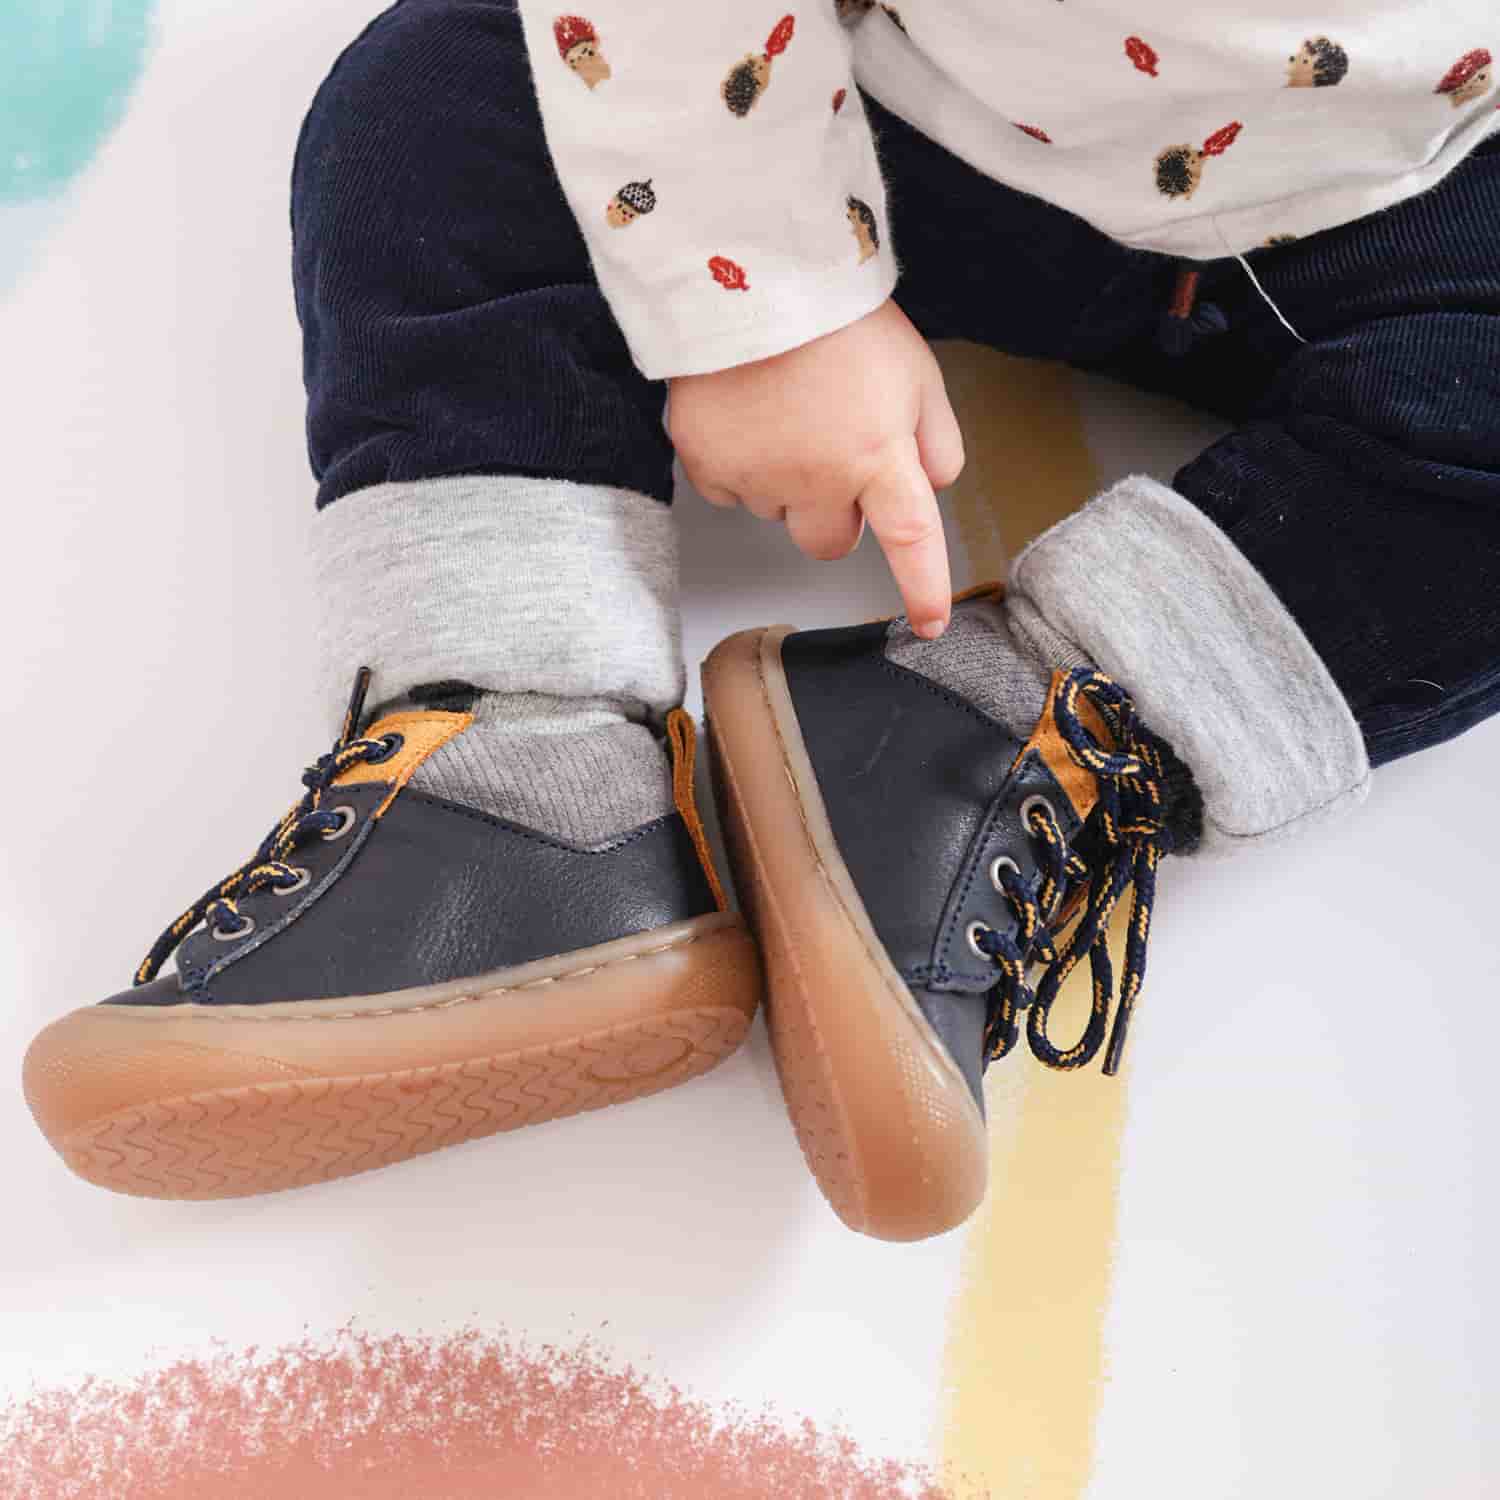 Chaussures Bébé en Cuir Souple – Pour Les Petits